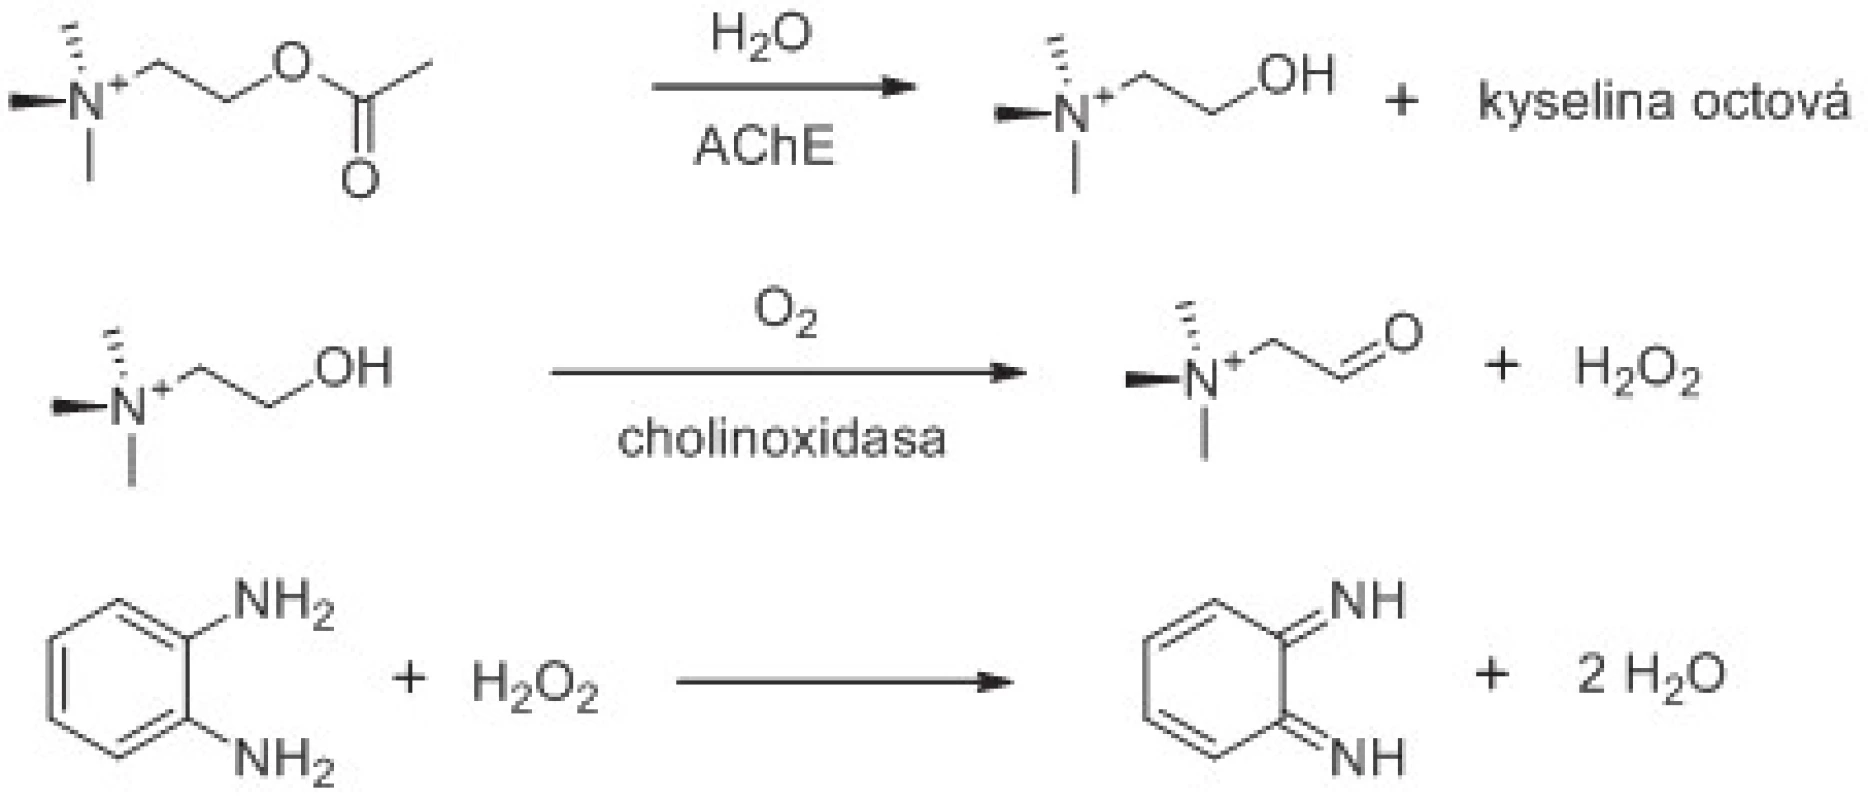 Využití cholinoxidasy při stanovení aktivity AChE. Znázorněno je i použití chromogenního substrátu reagujícího se vznikajícím peroxidem vodíku. Reakční schéma je upraveno z citovaných prací &lt;sup&gt;61, 62)&lt;/sup&gt;.